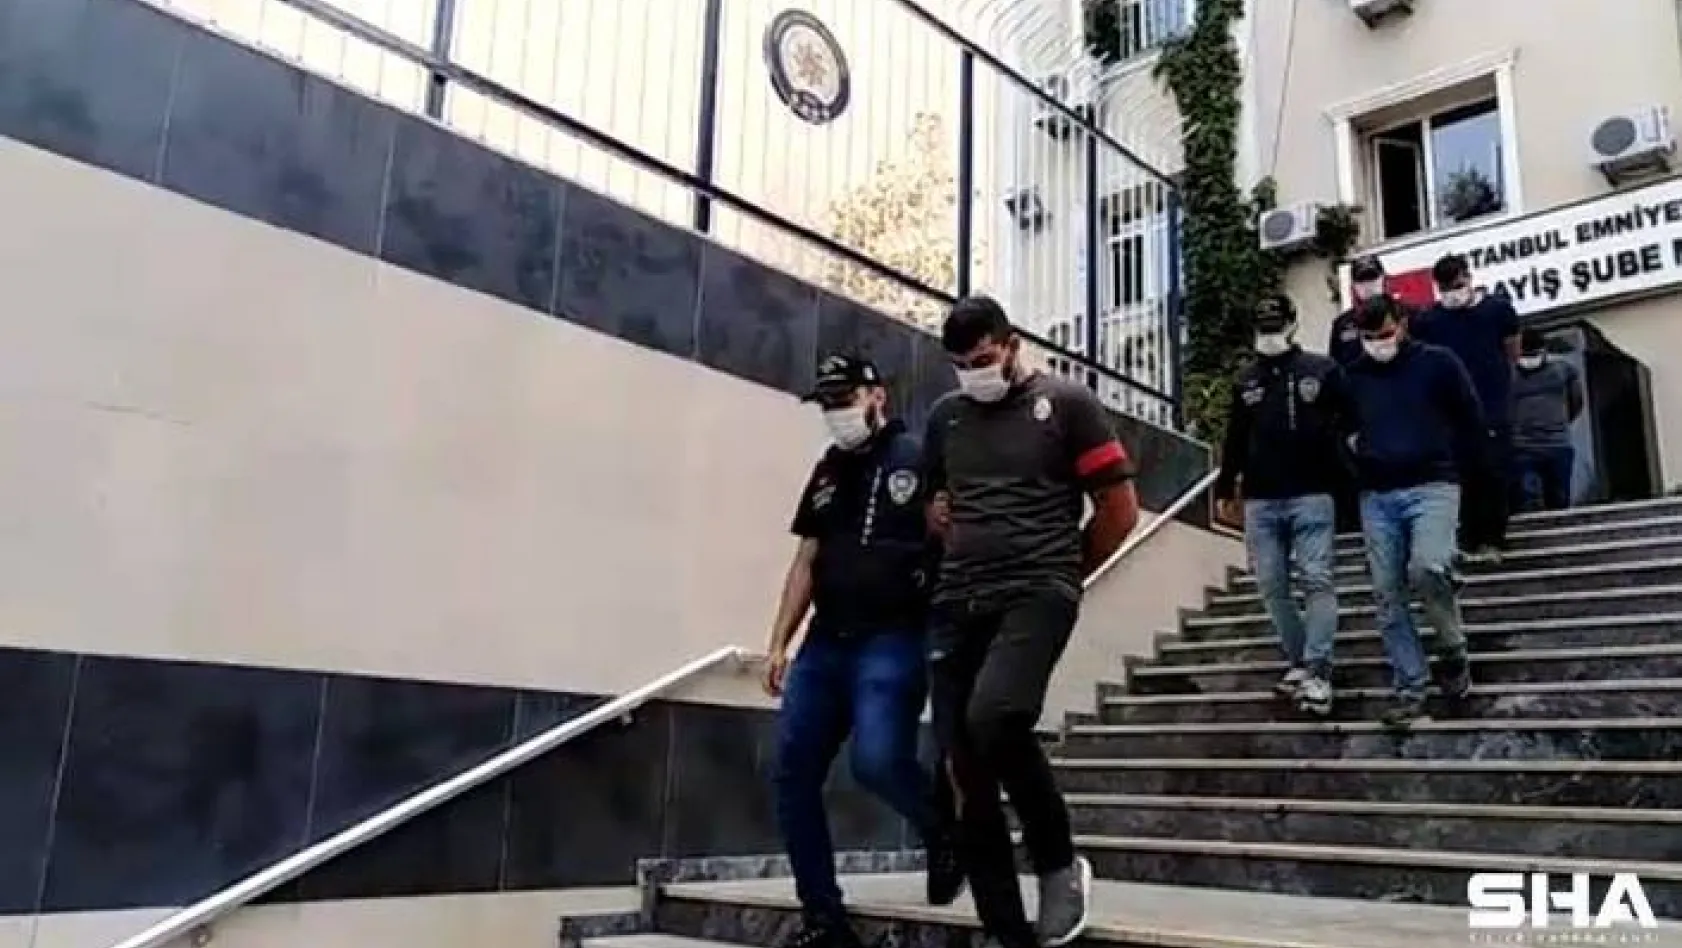 32 farklı hırsızlık olayının failleri Arnavutköy'de kıskıvrak yakalandı